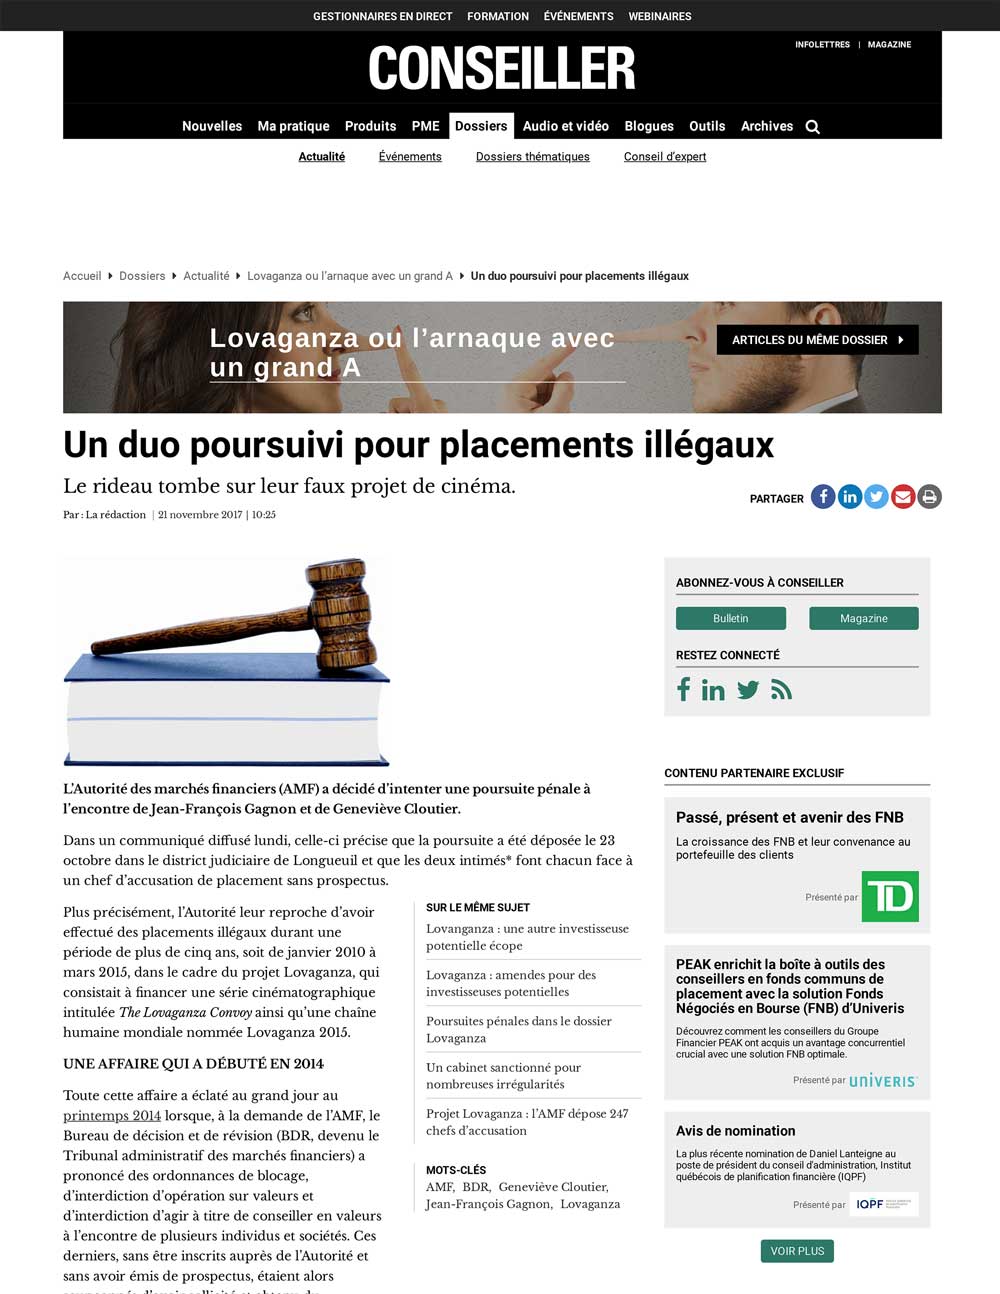 2017-11-21-un-duo-poursuivi-pour-placements-illegaux